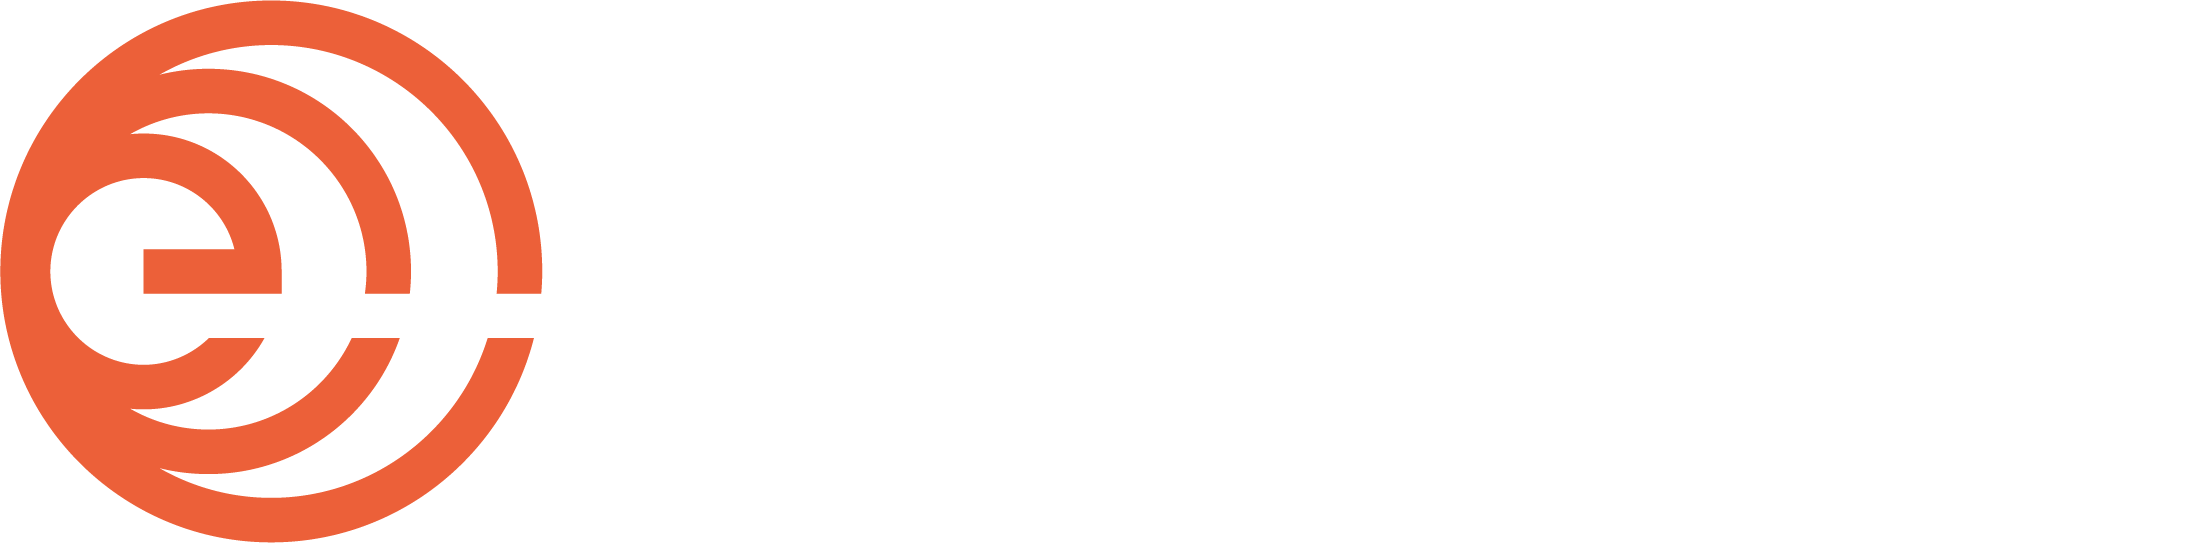 Dewxis logo white